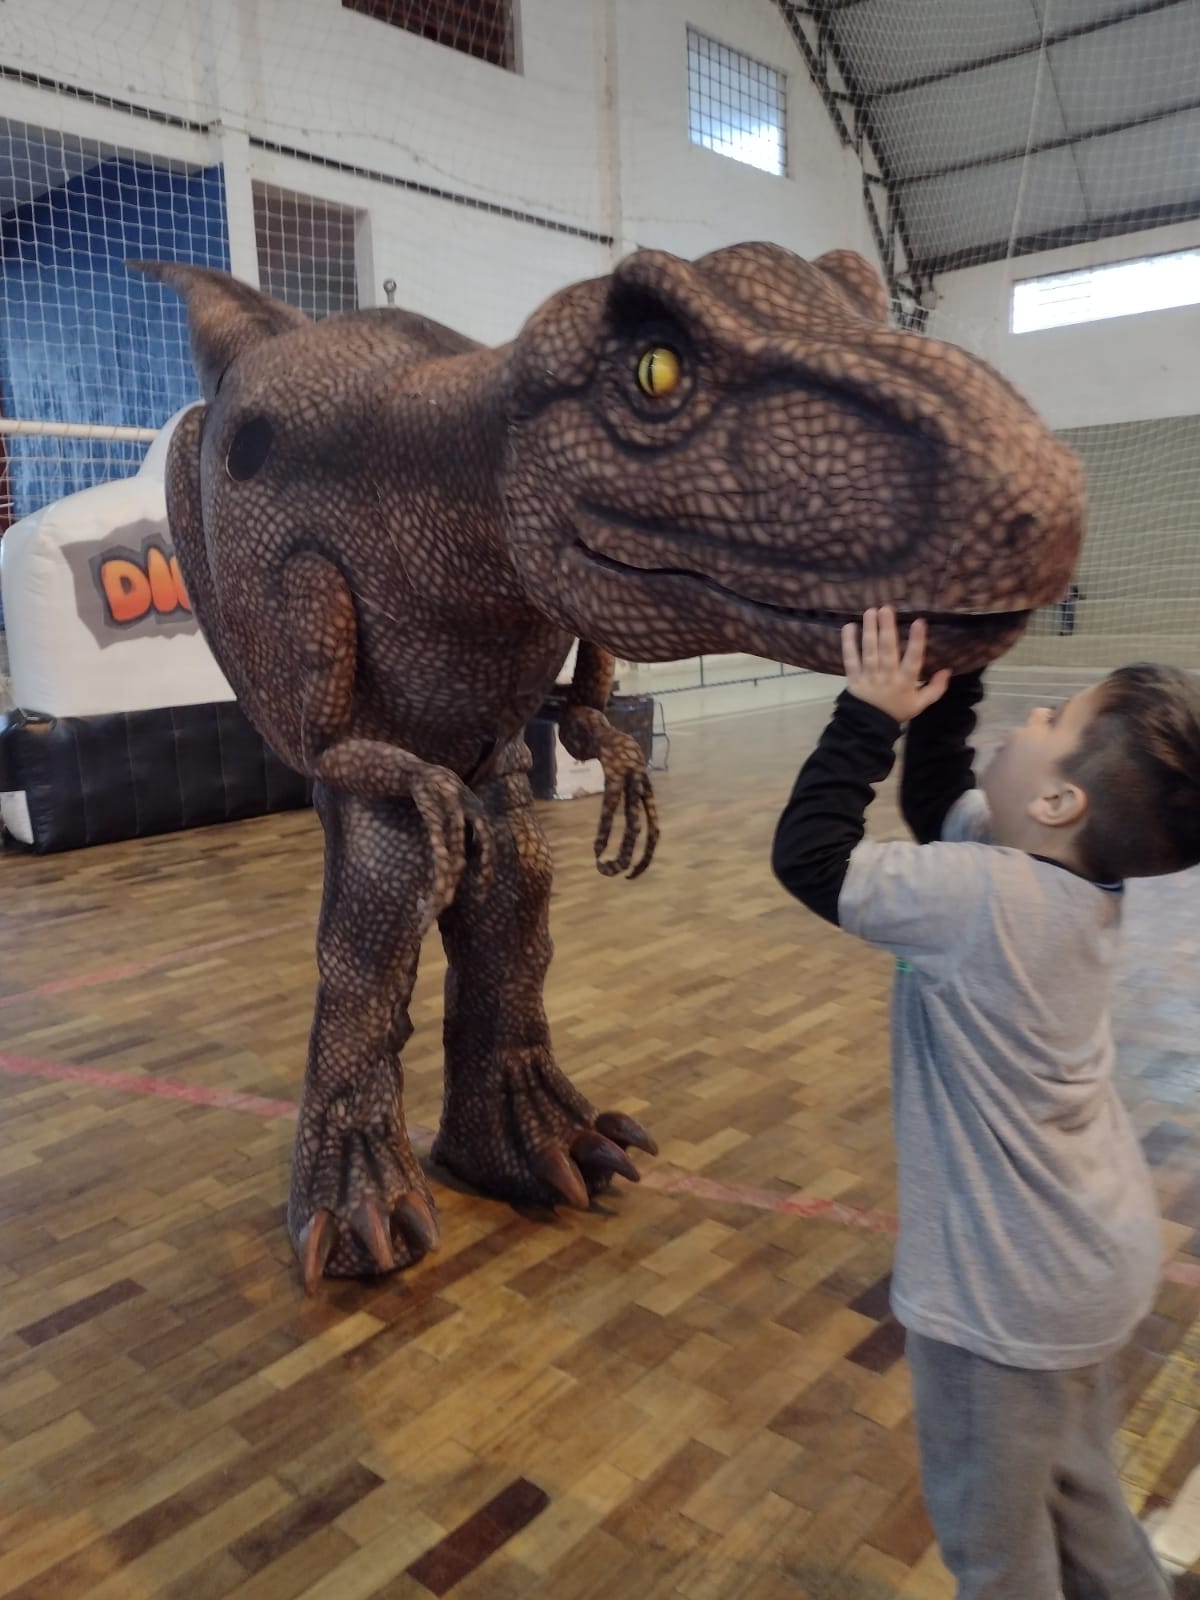 Parque de dinossauros virtual ensina noções sobre empreendedorismo para  crianças